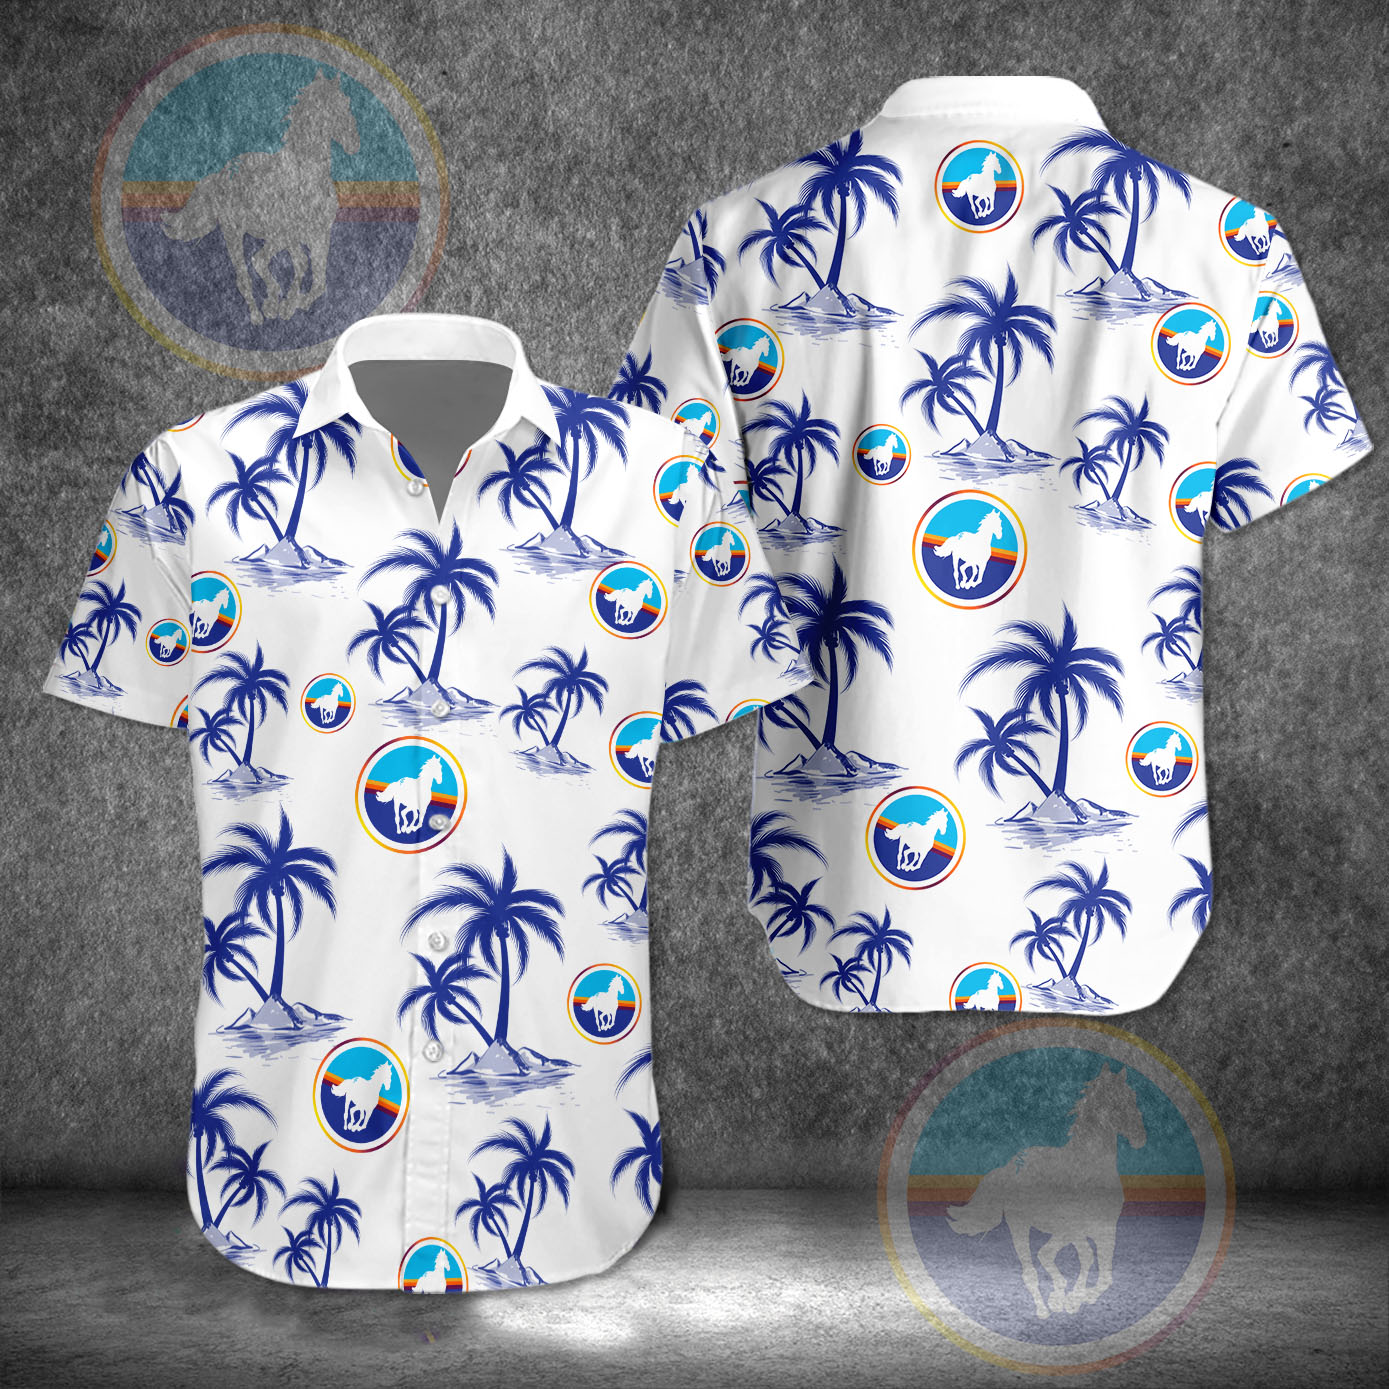 montucky cold snacks hawaiian shirt 9245 g53Y5